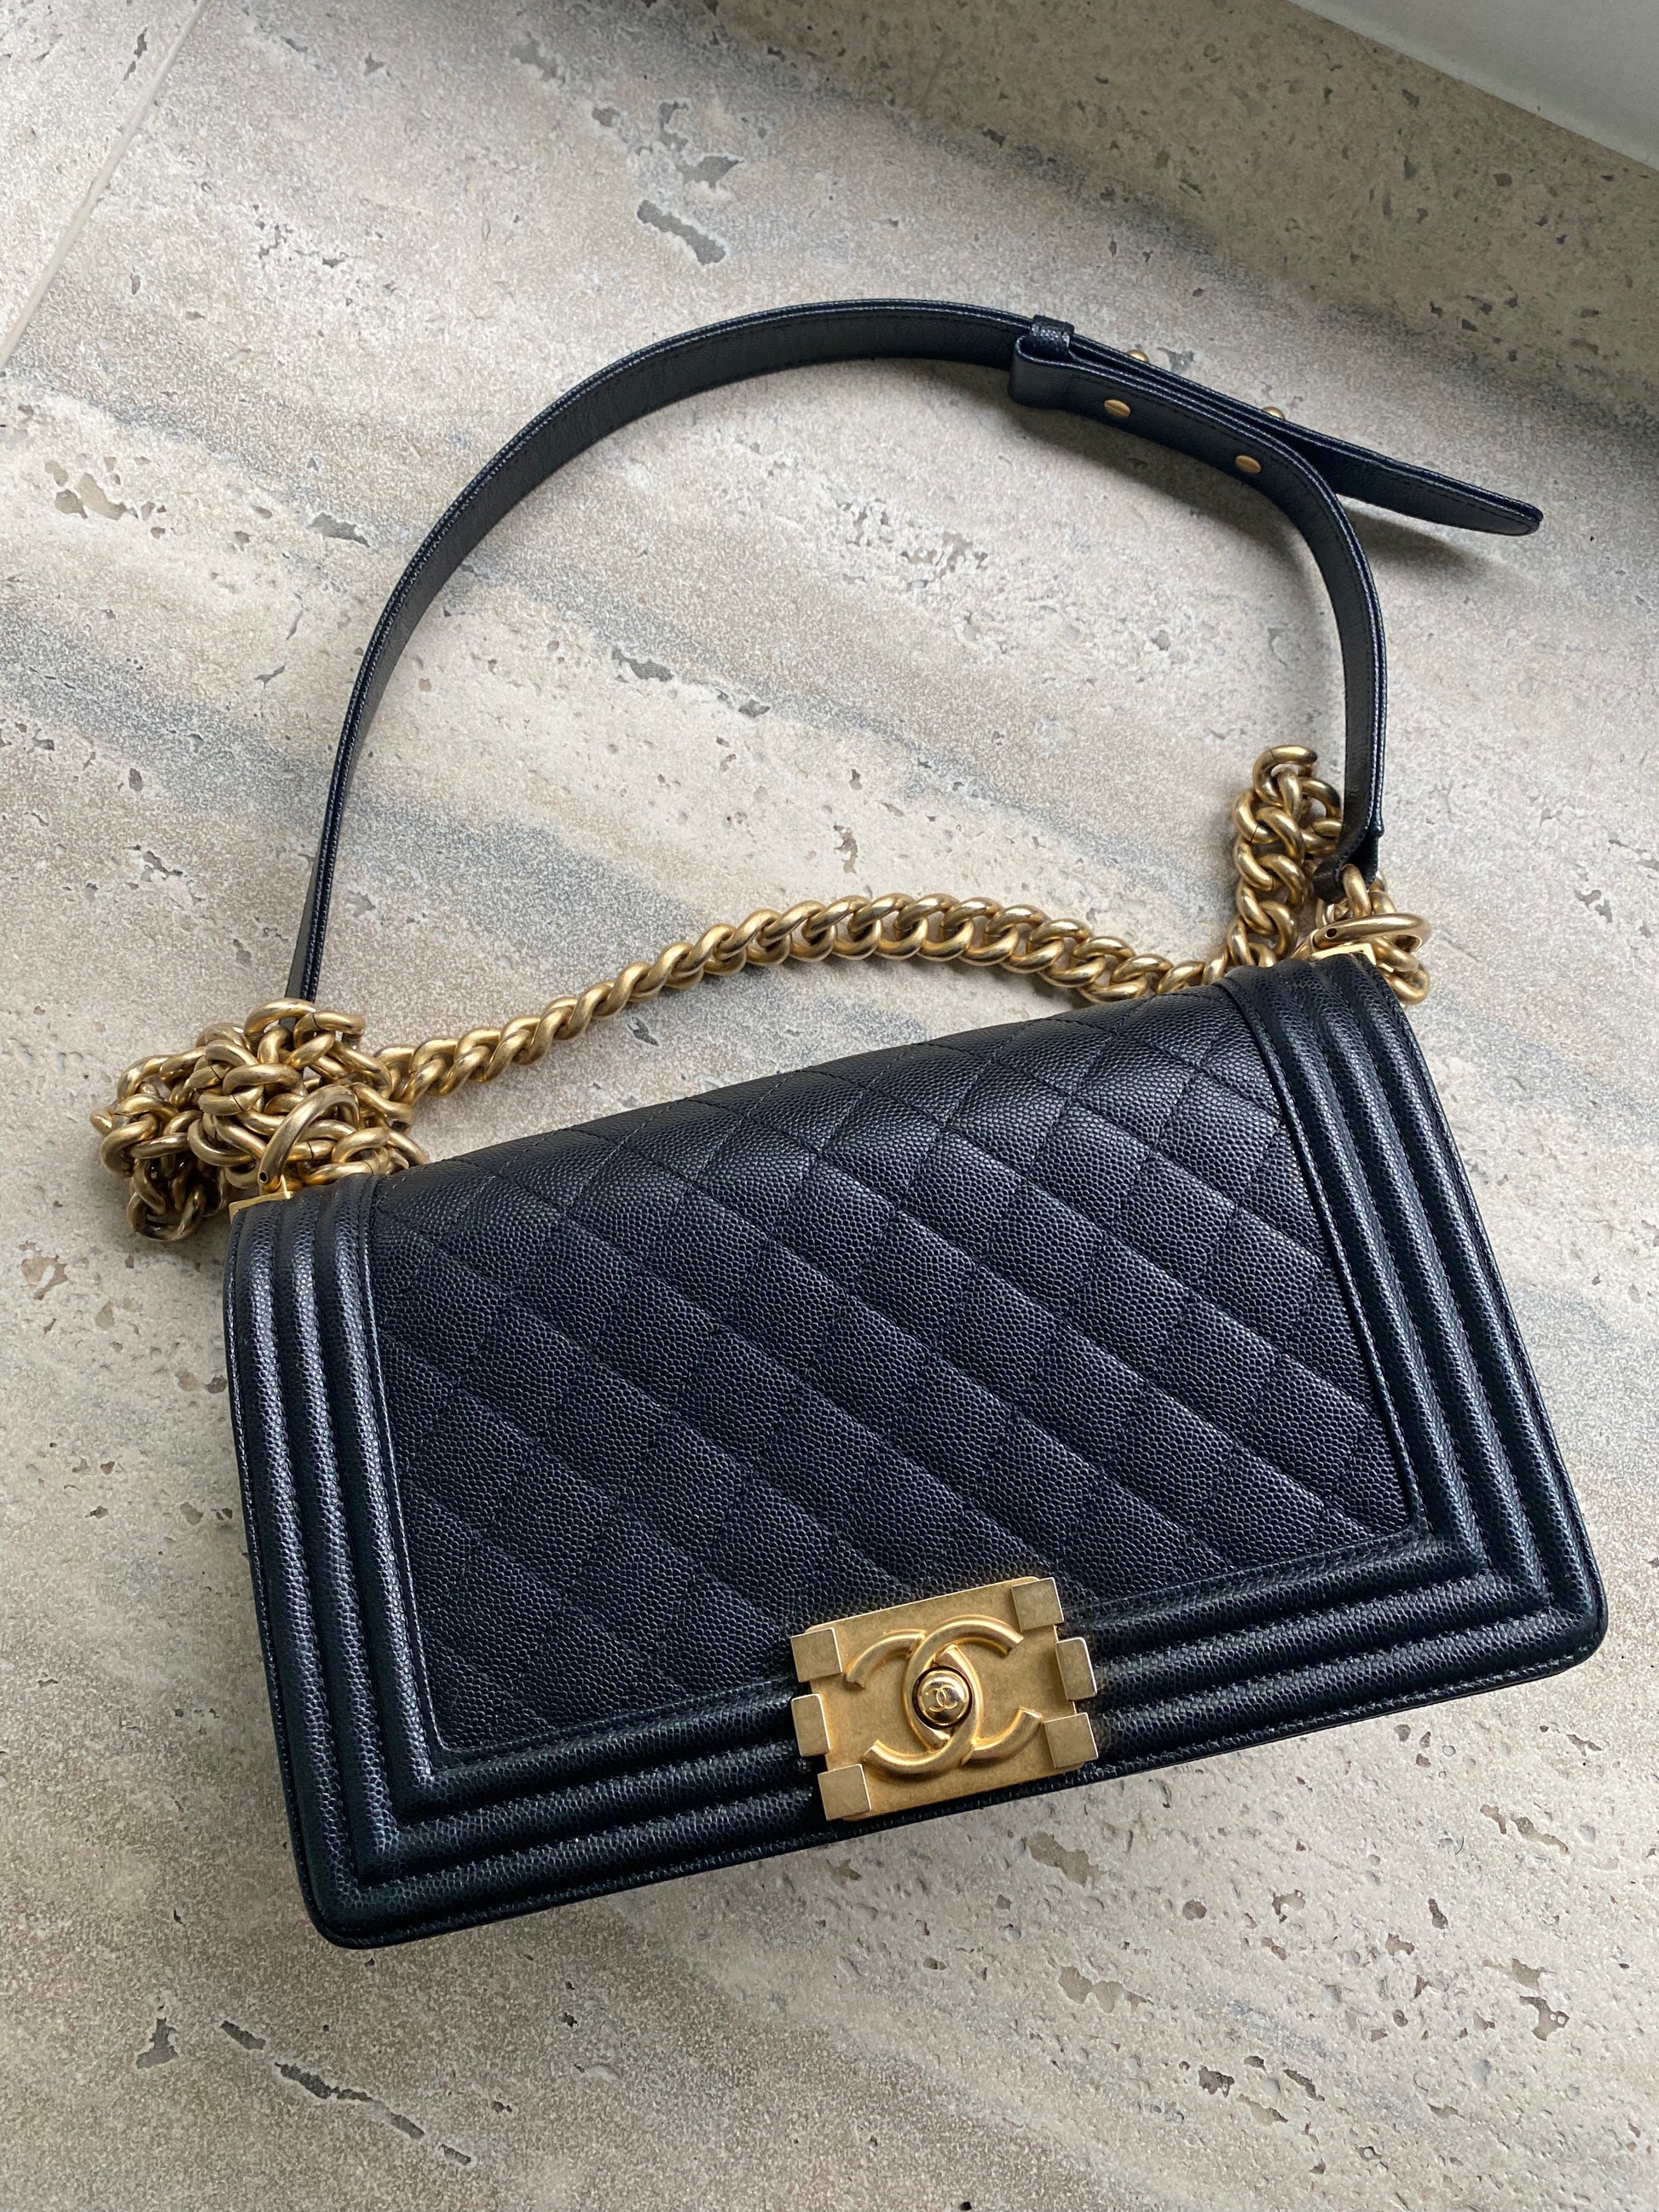 Chanel handbag - black and gold - Boy – Isa's Closet